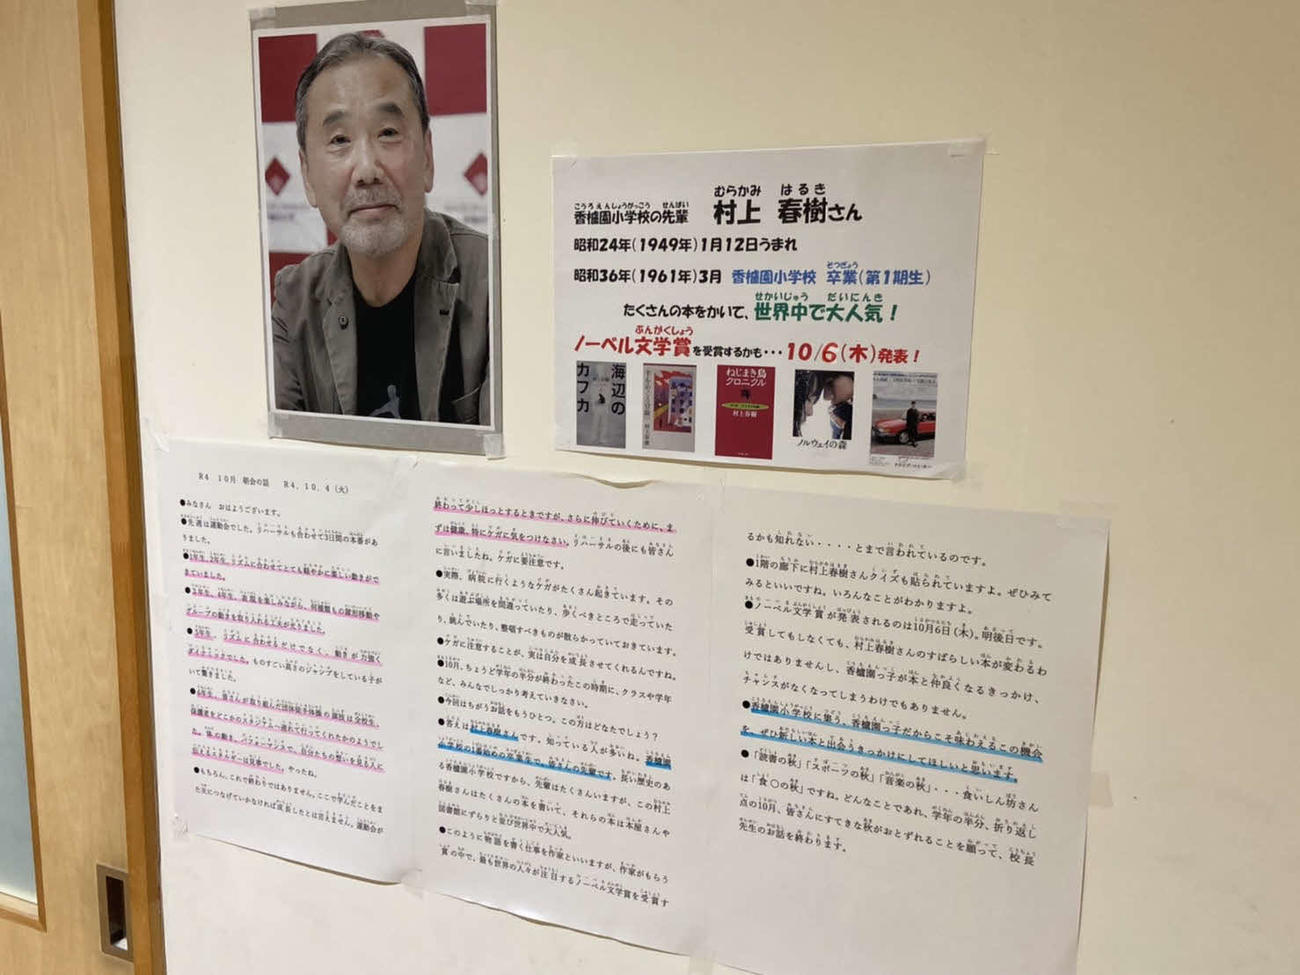 村上春樹さんの母校である兵庫・西宮市立香櫨園小学校に掲載されている、村上さんにまつわる掲示物